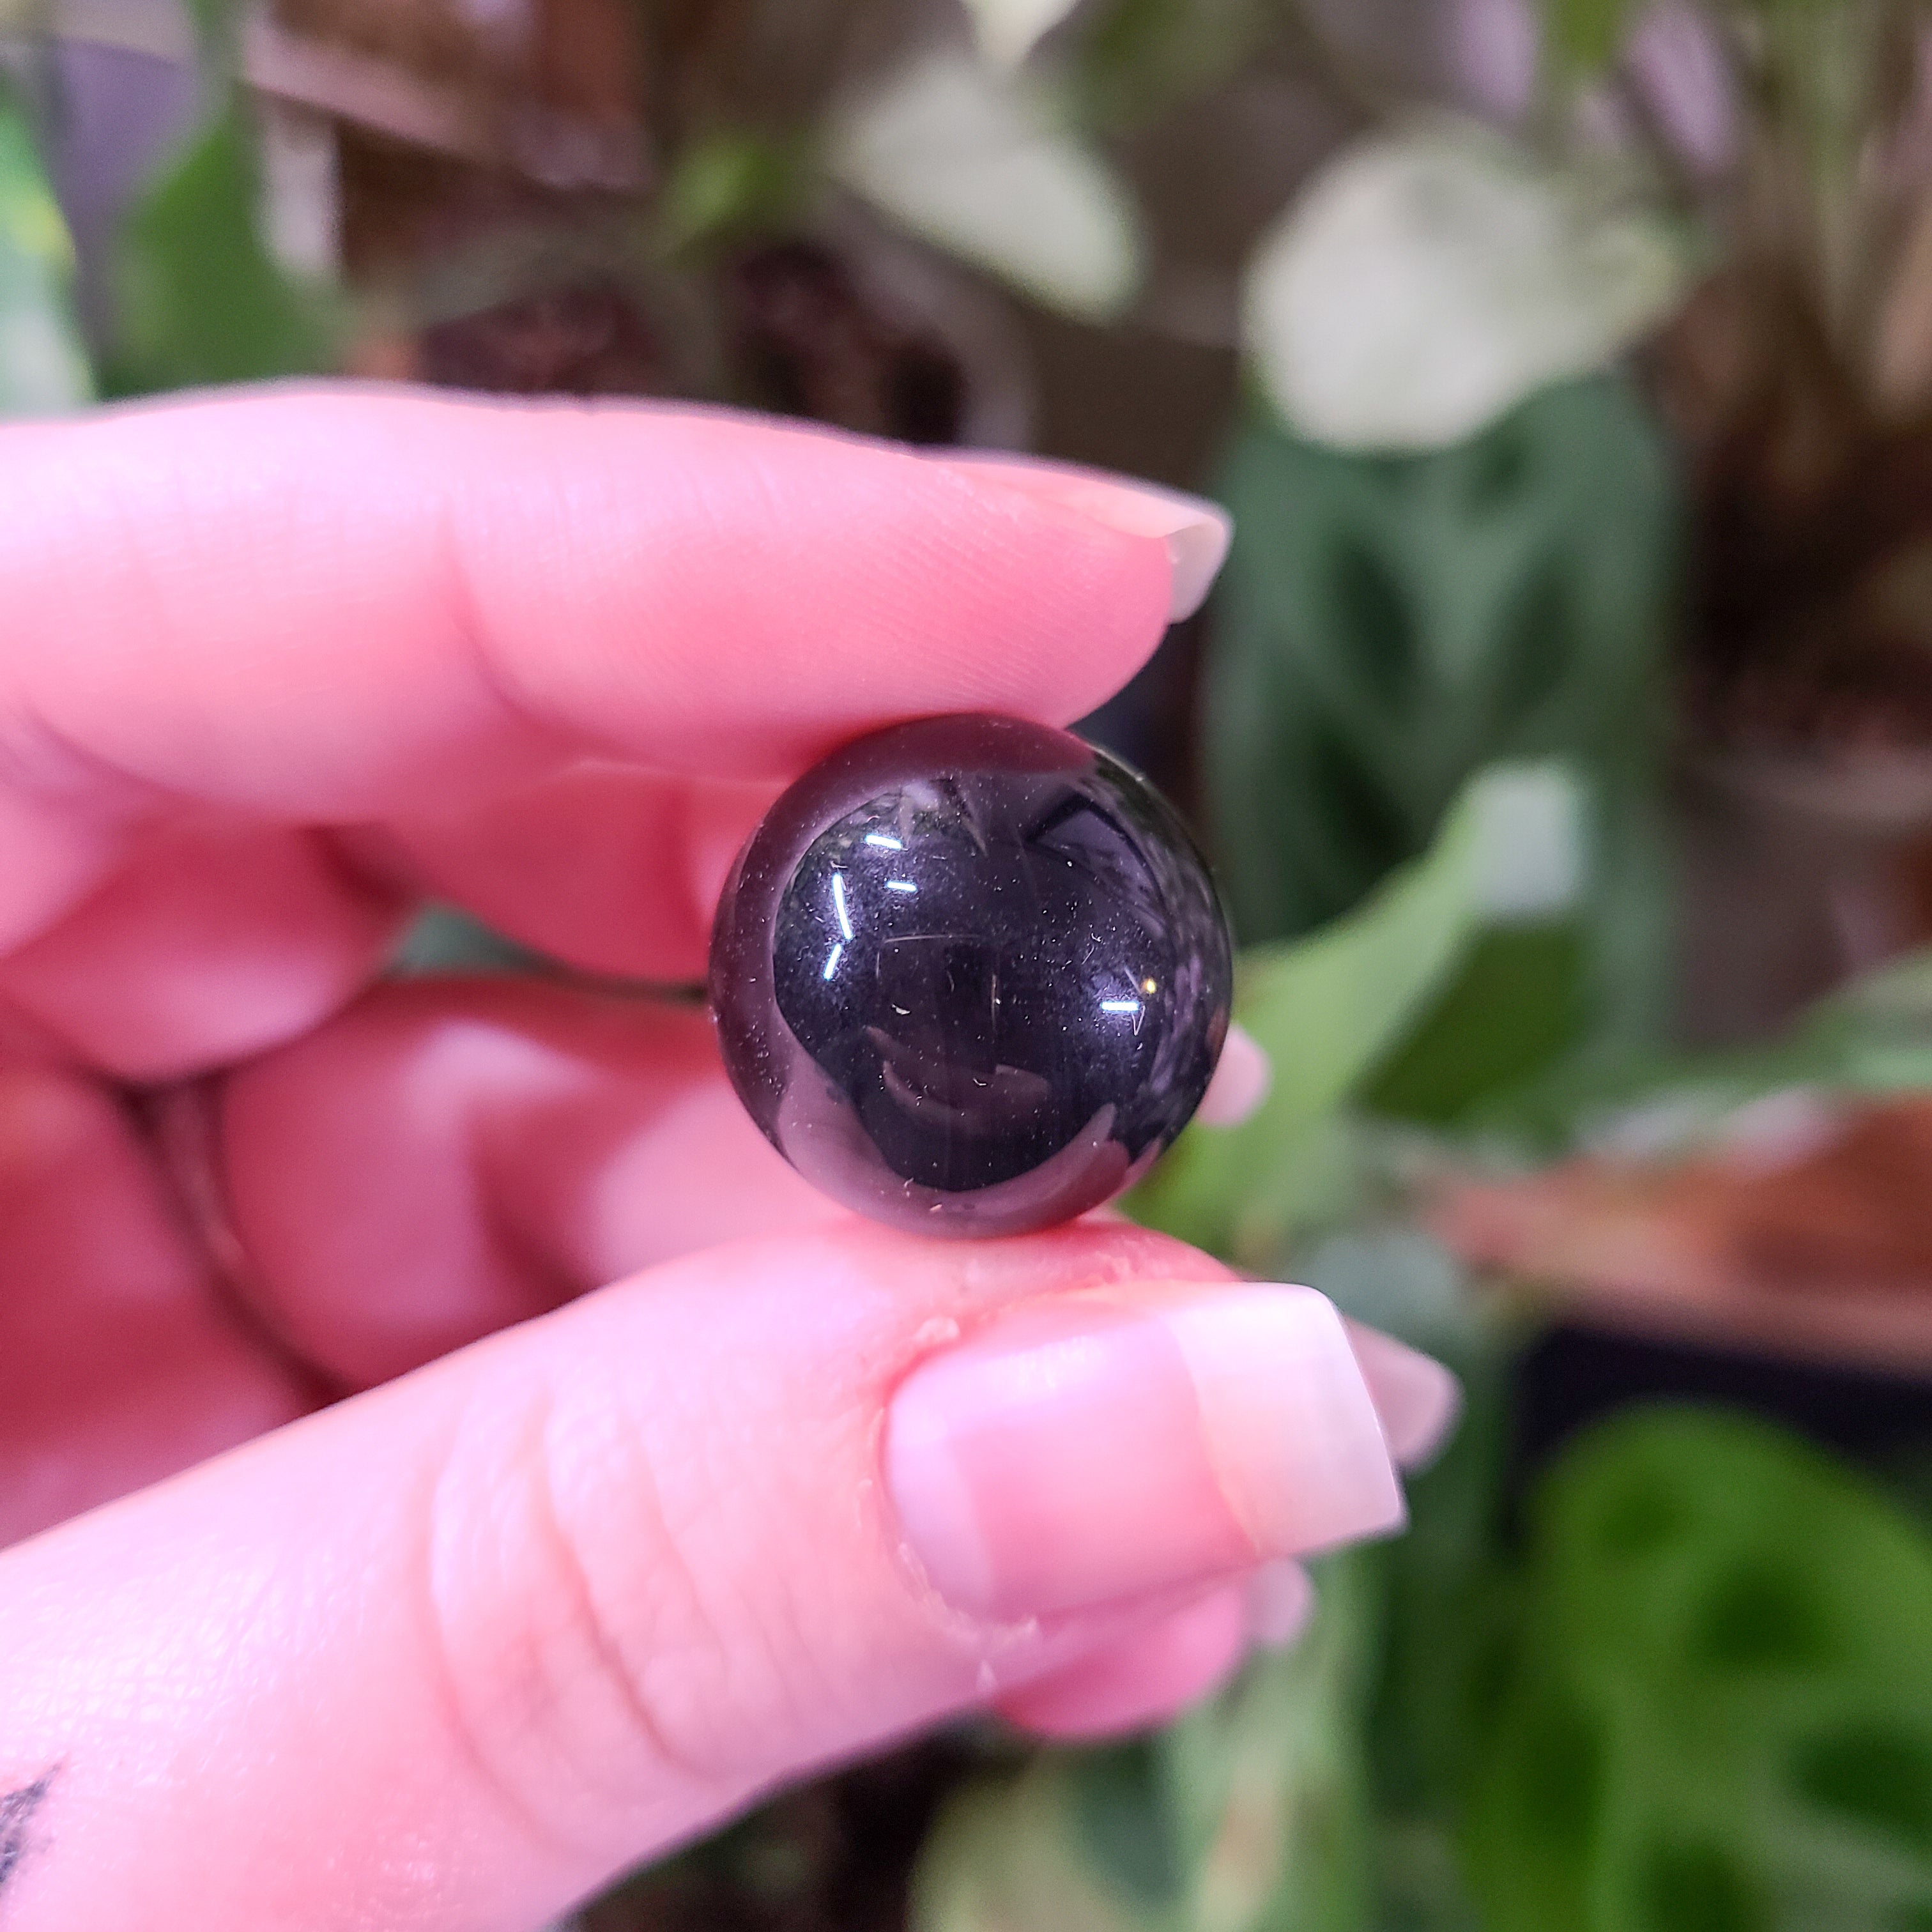 Rainbow Obsidian Mini Spheres - Intuitively Chosen